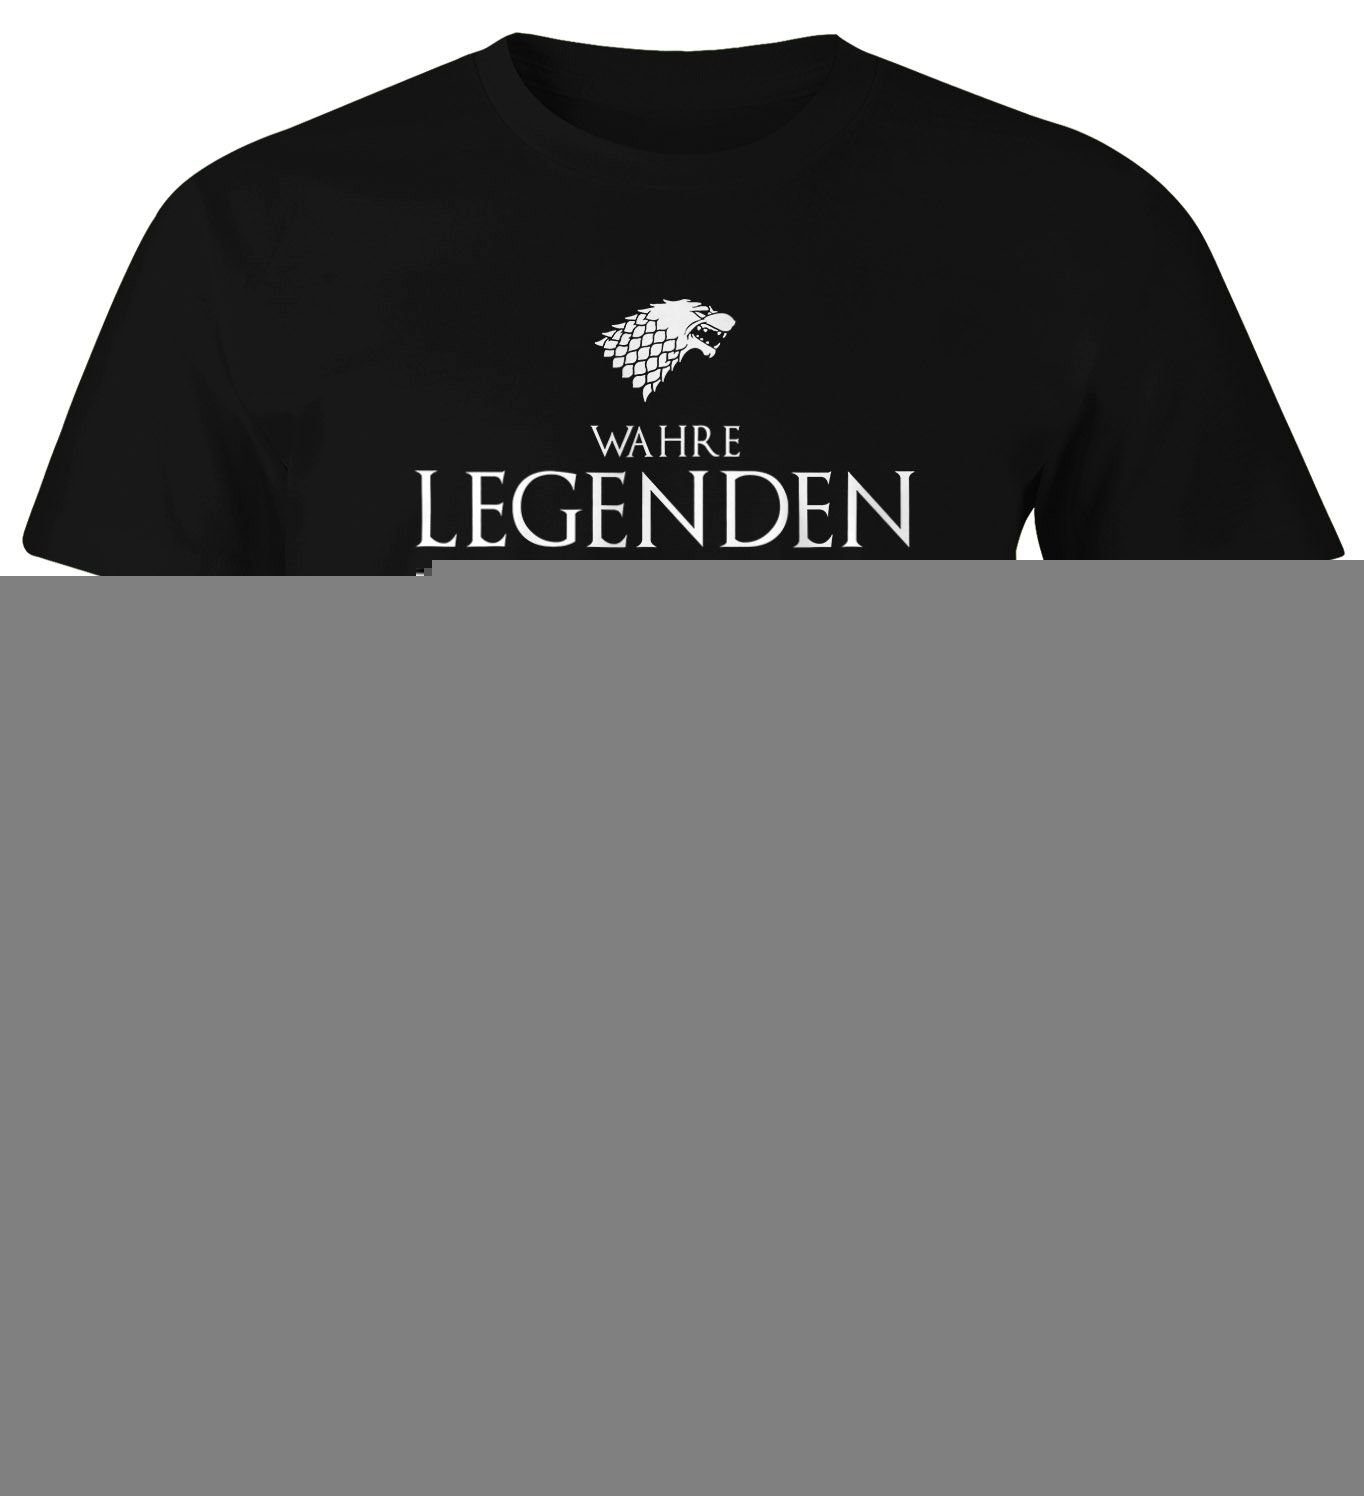 MoonWorks Print-Shirt Legenden schwarz T-Shirt Fun-Shirt Februar im werden mit Wahre Object] geboren Print [object Moonworks® Herren